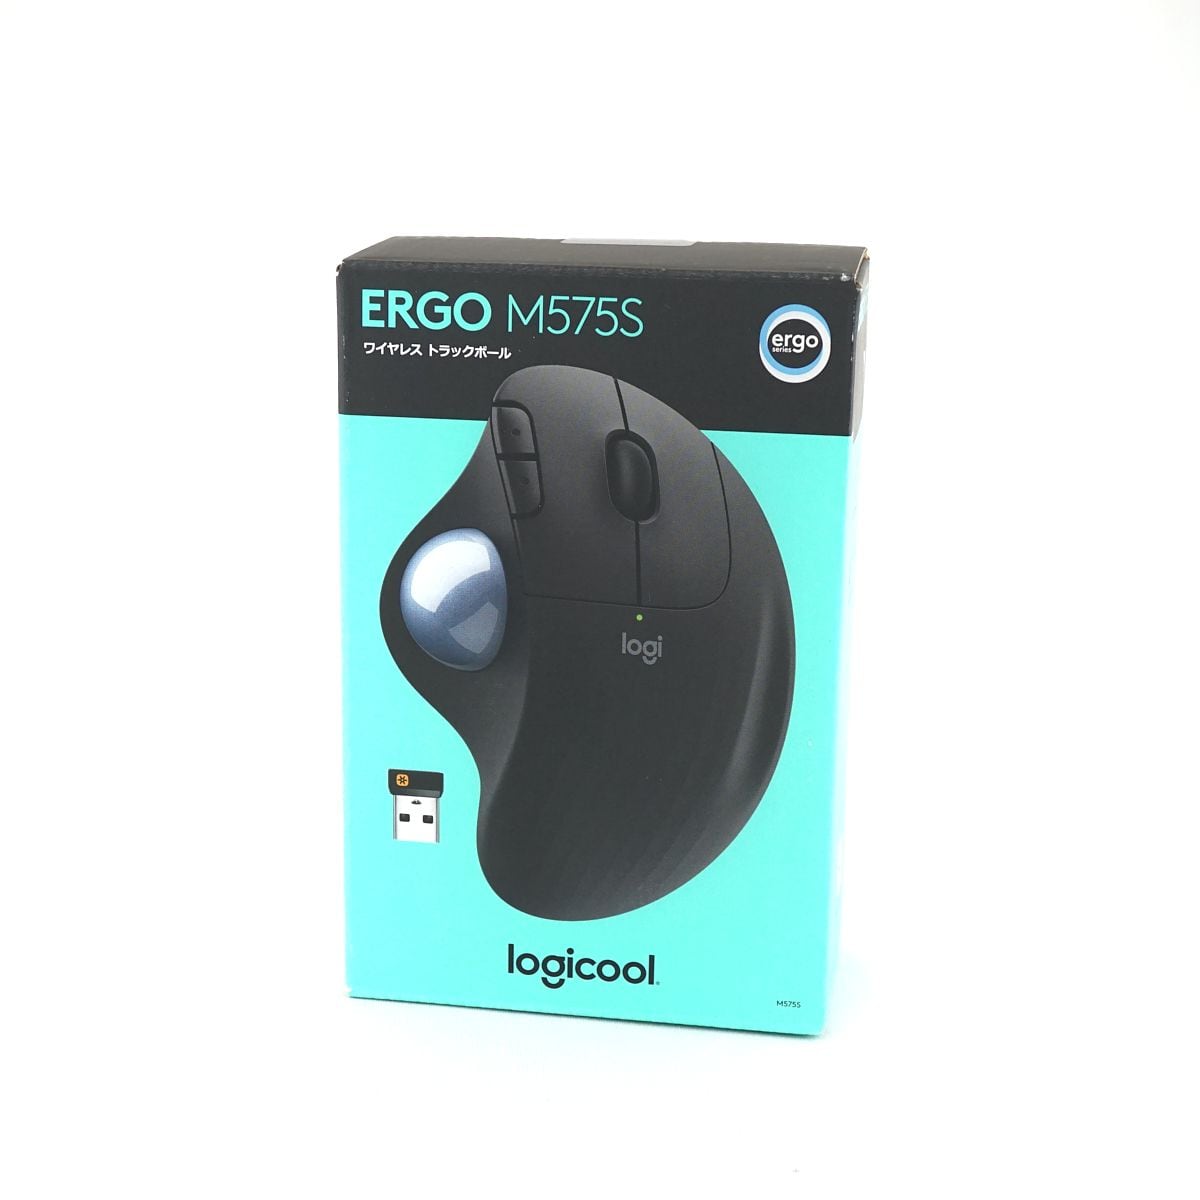 Logicool ロジクール ERGO M575S ワイヤレス トラックボールマウス 新品 未使用 ワイヤレス S V8750